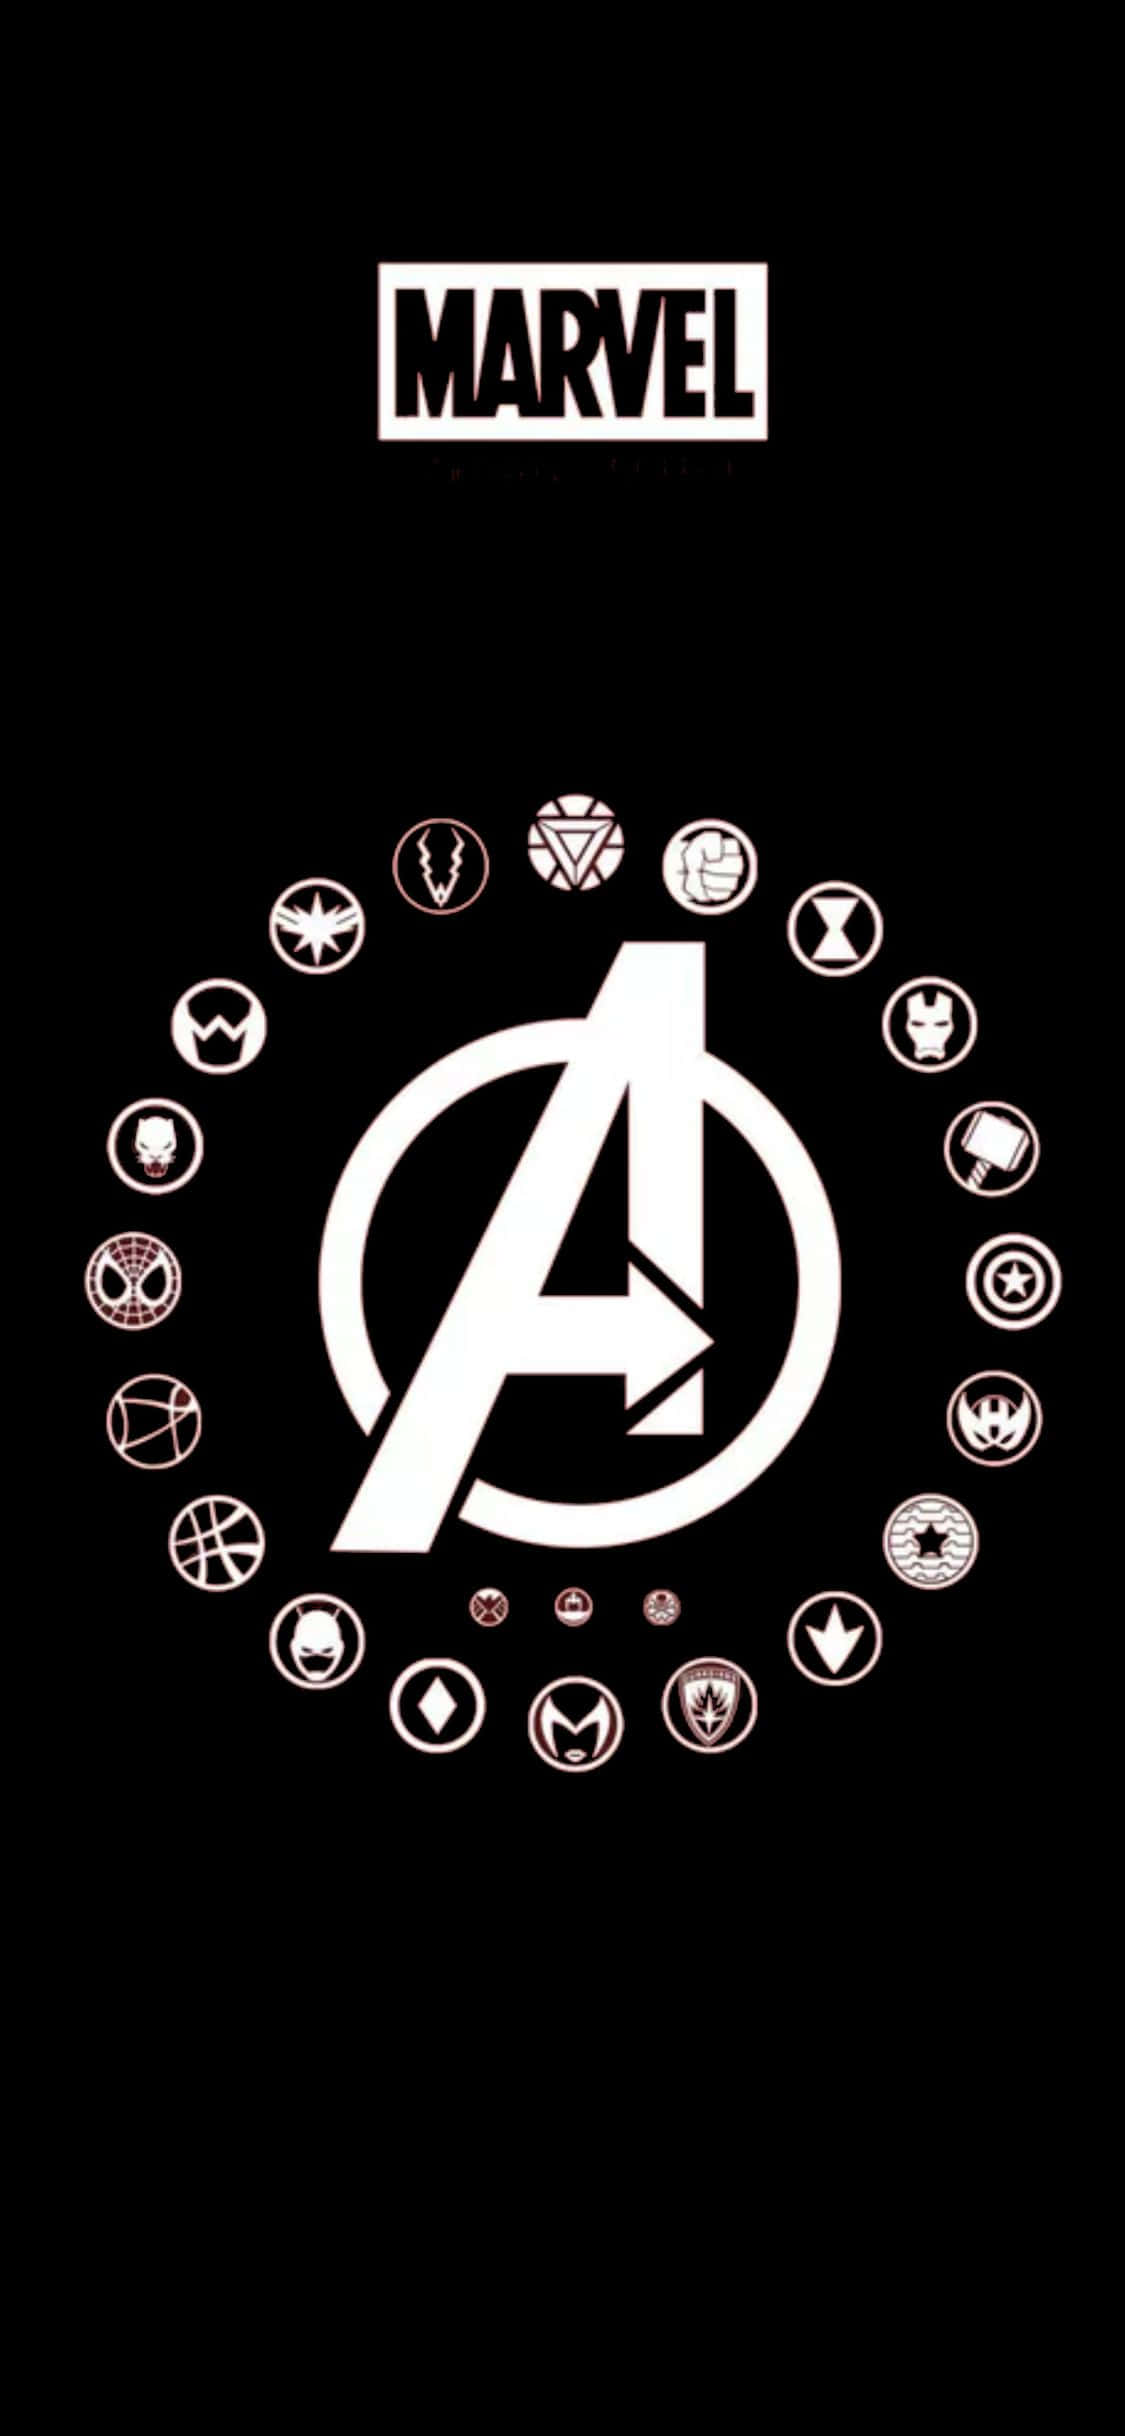 Sfondoper Iphone Xs Con Il Logo Degli Avengers E Il Simbolo Dei Supereroi.